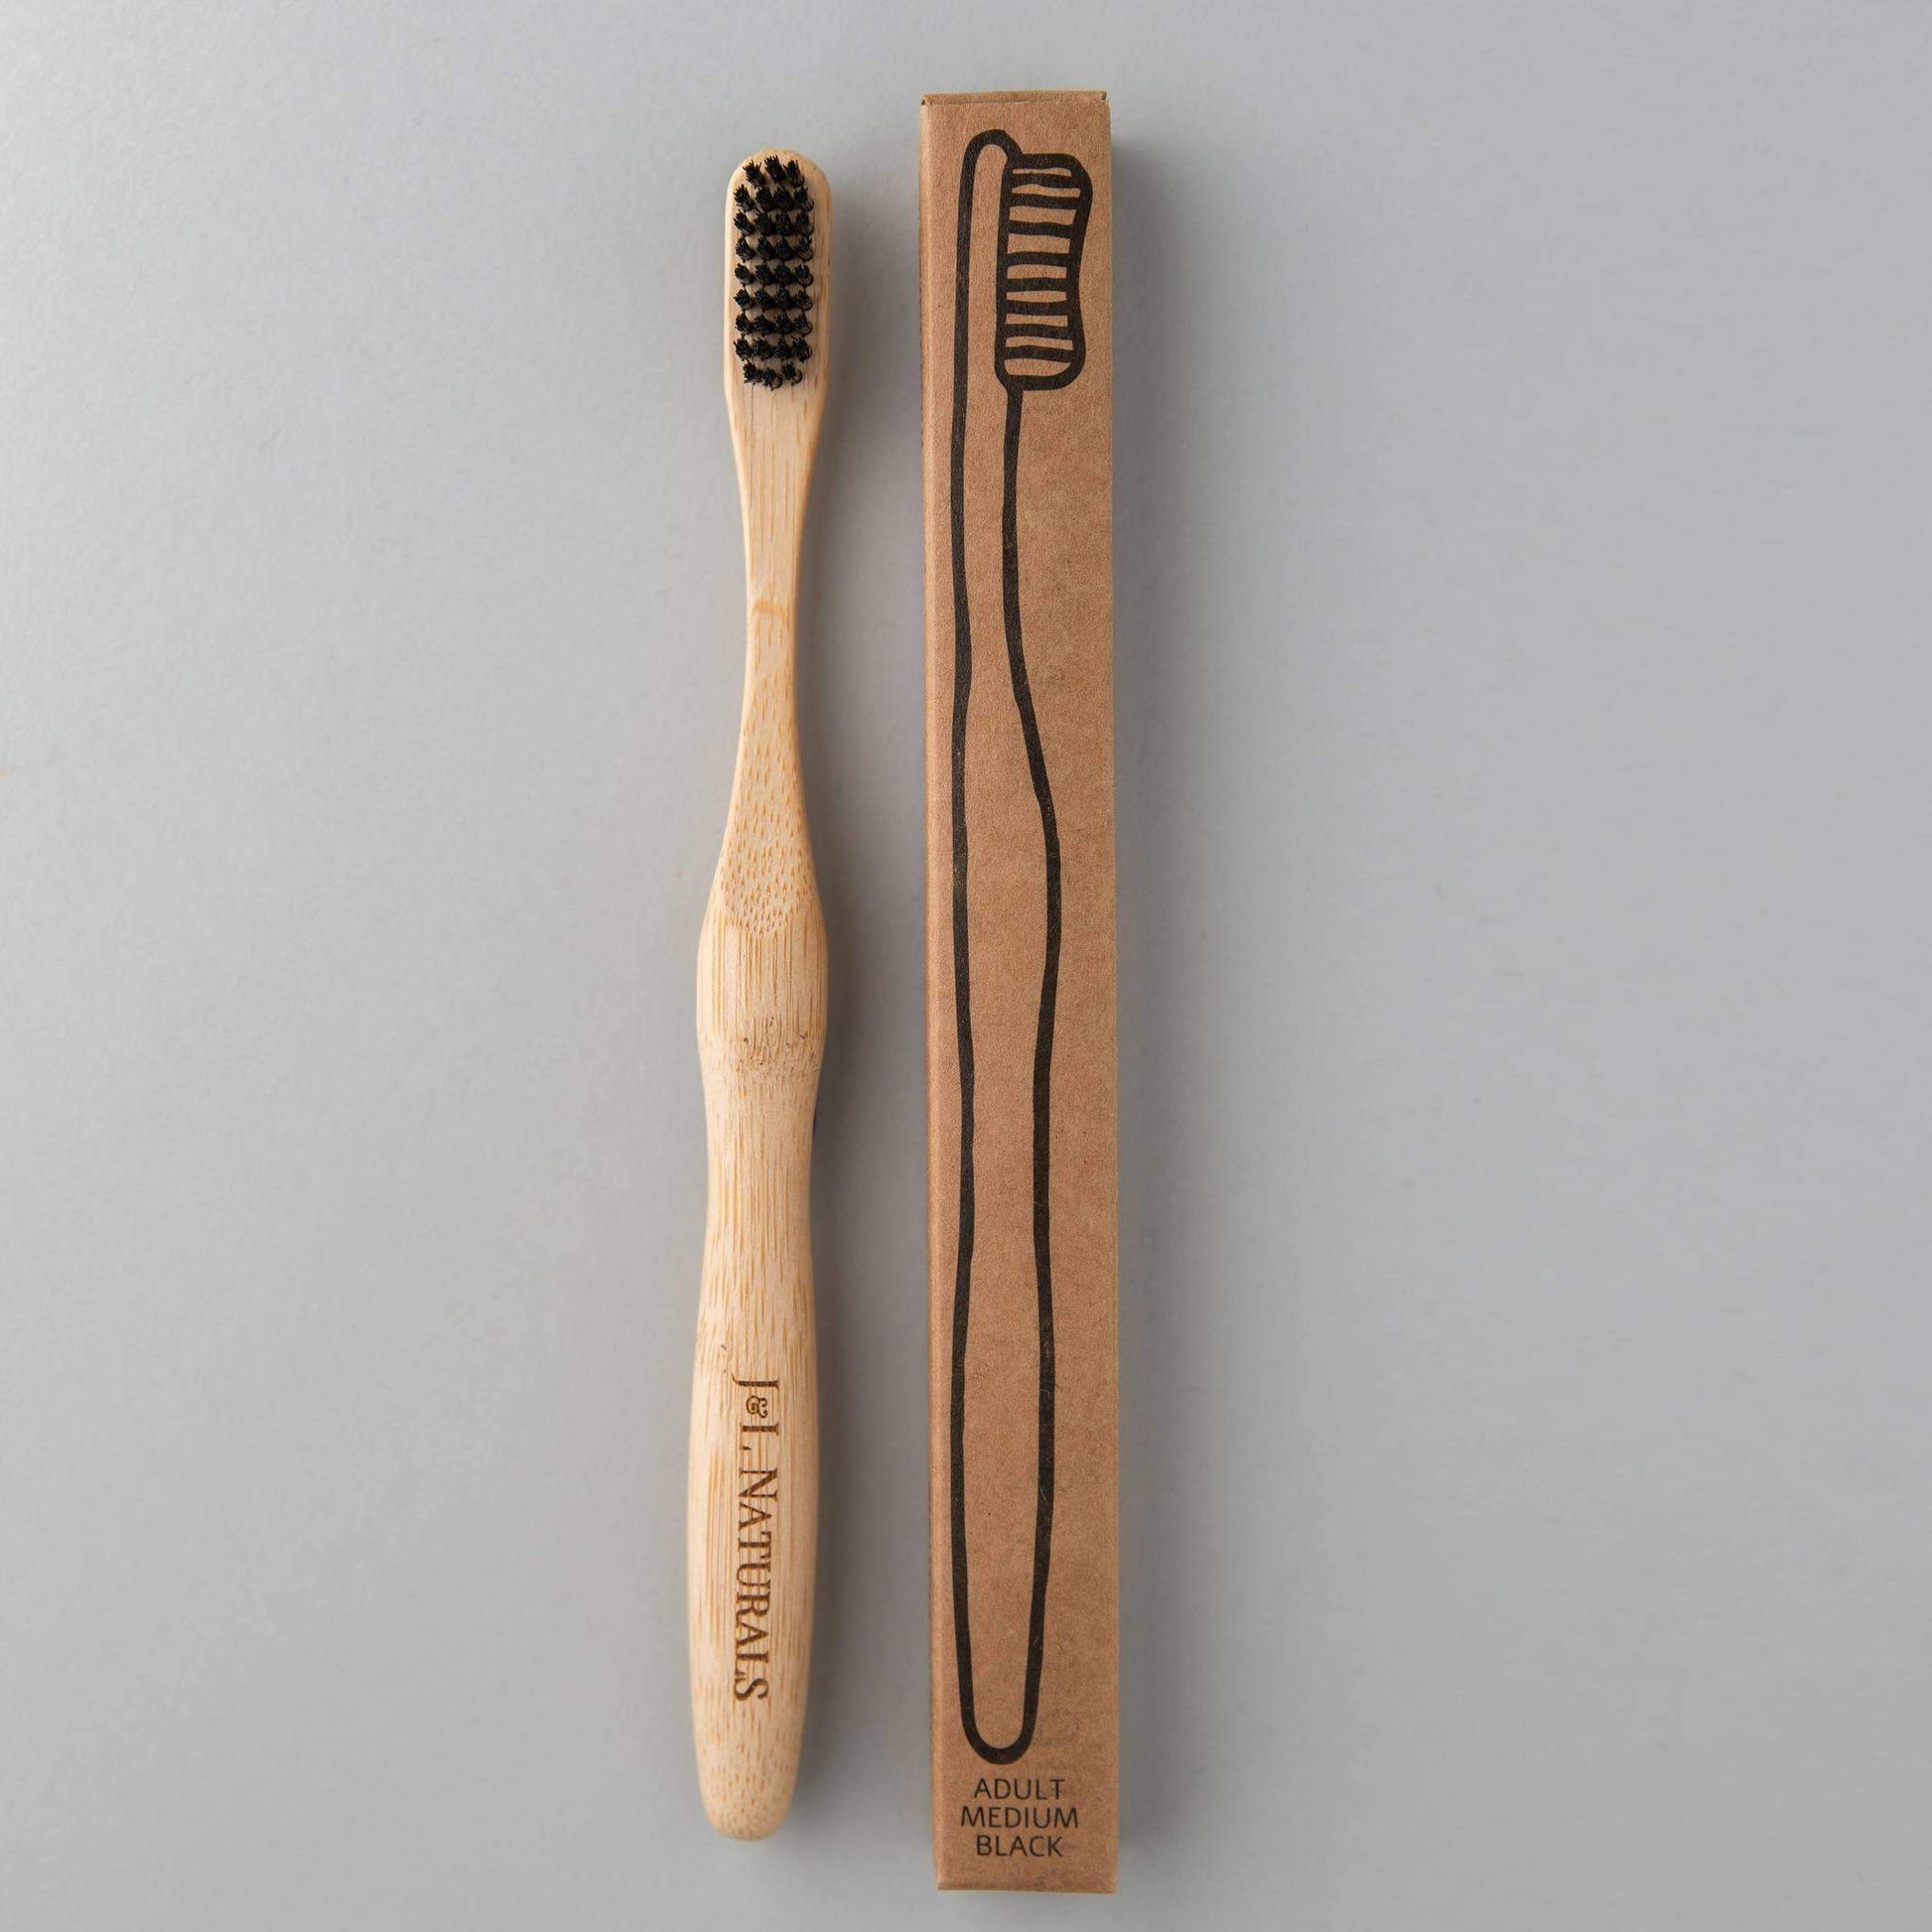 Bamboo Toothbrush - Saltwater Bodega